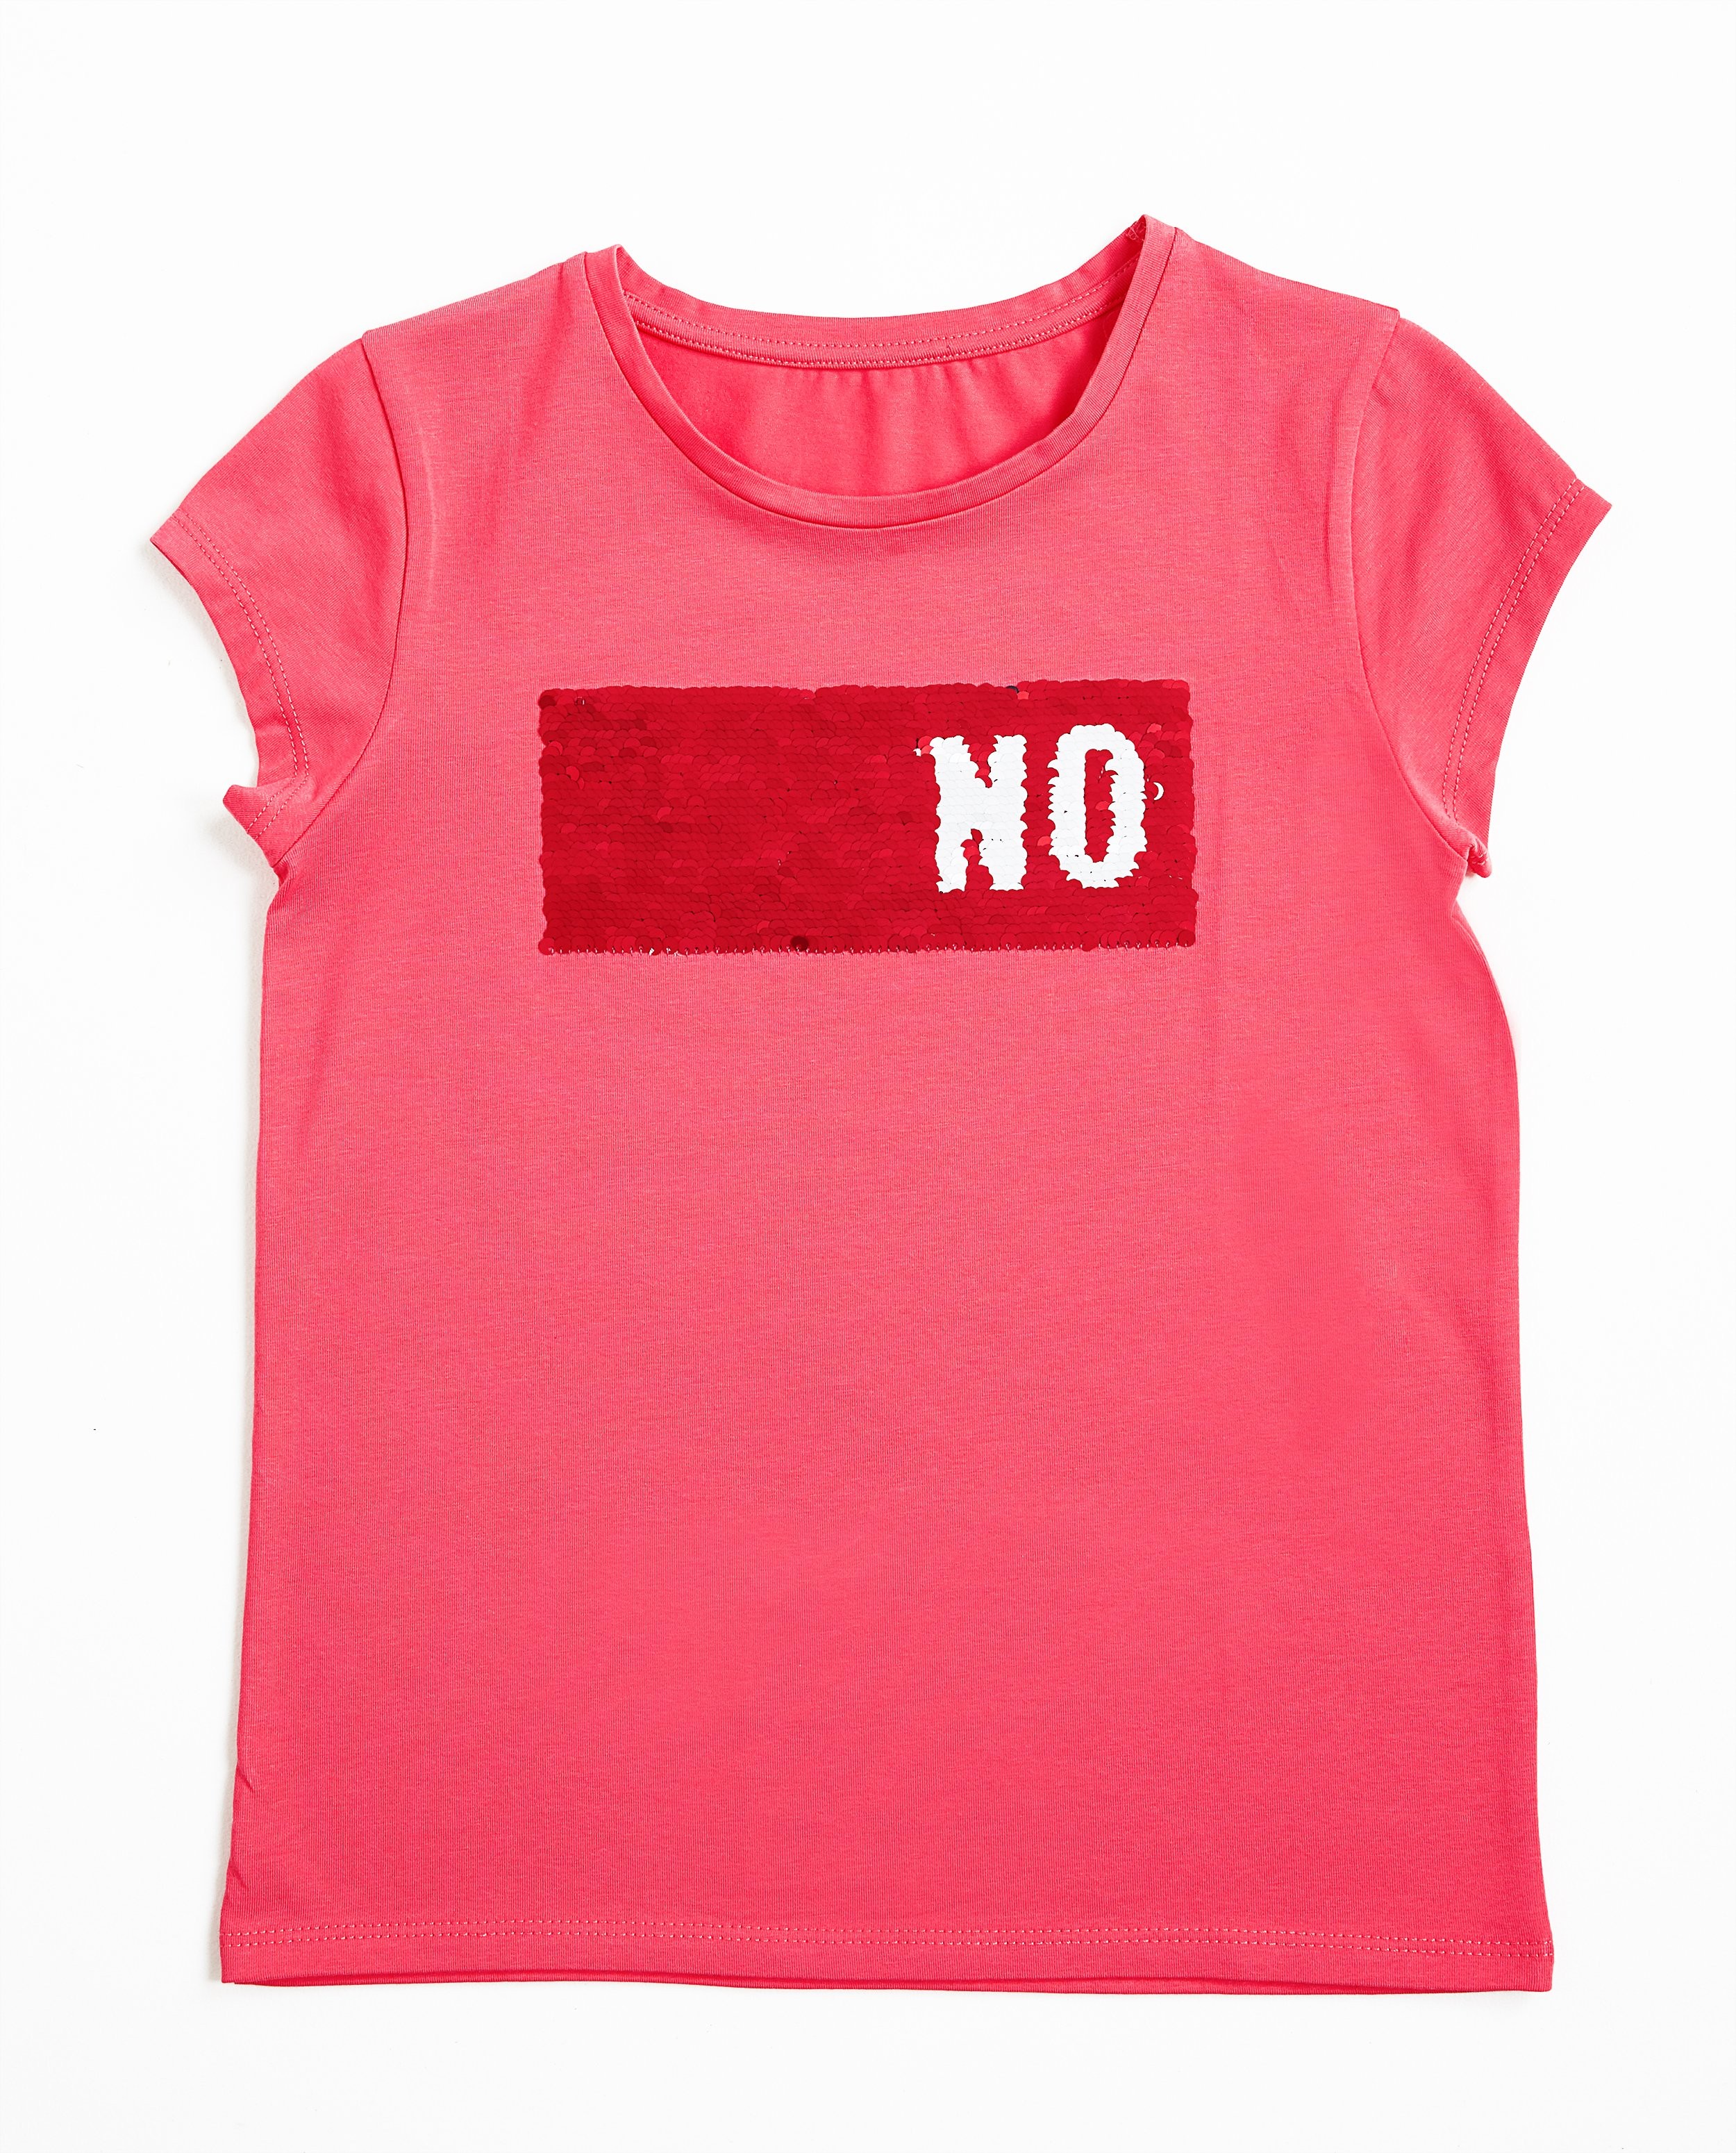 T-shirts - T-shirt rose à paillettes réversibles